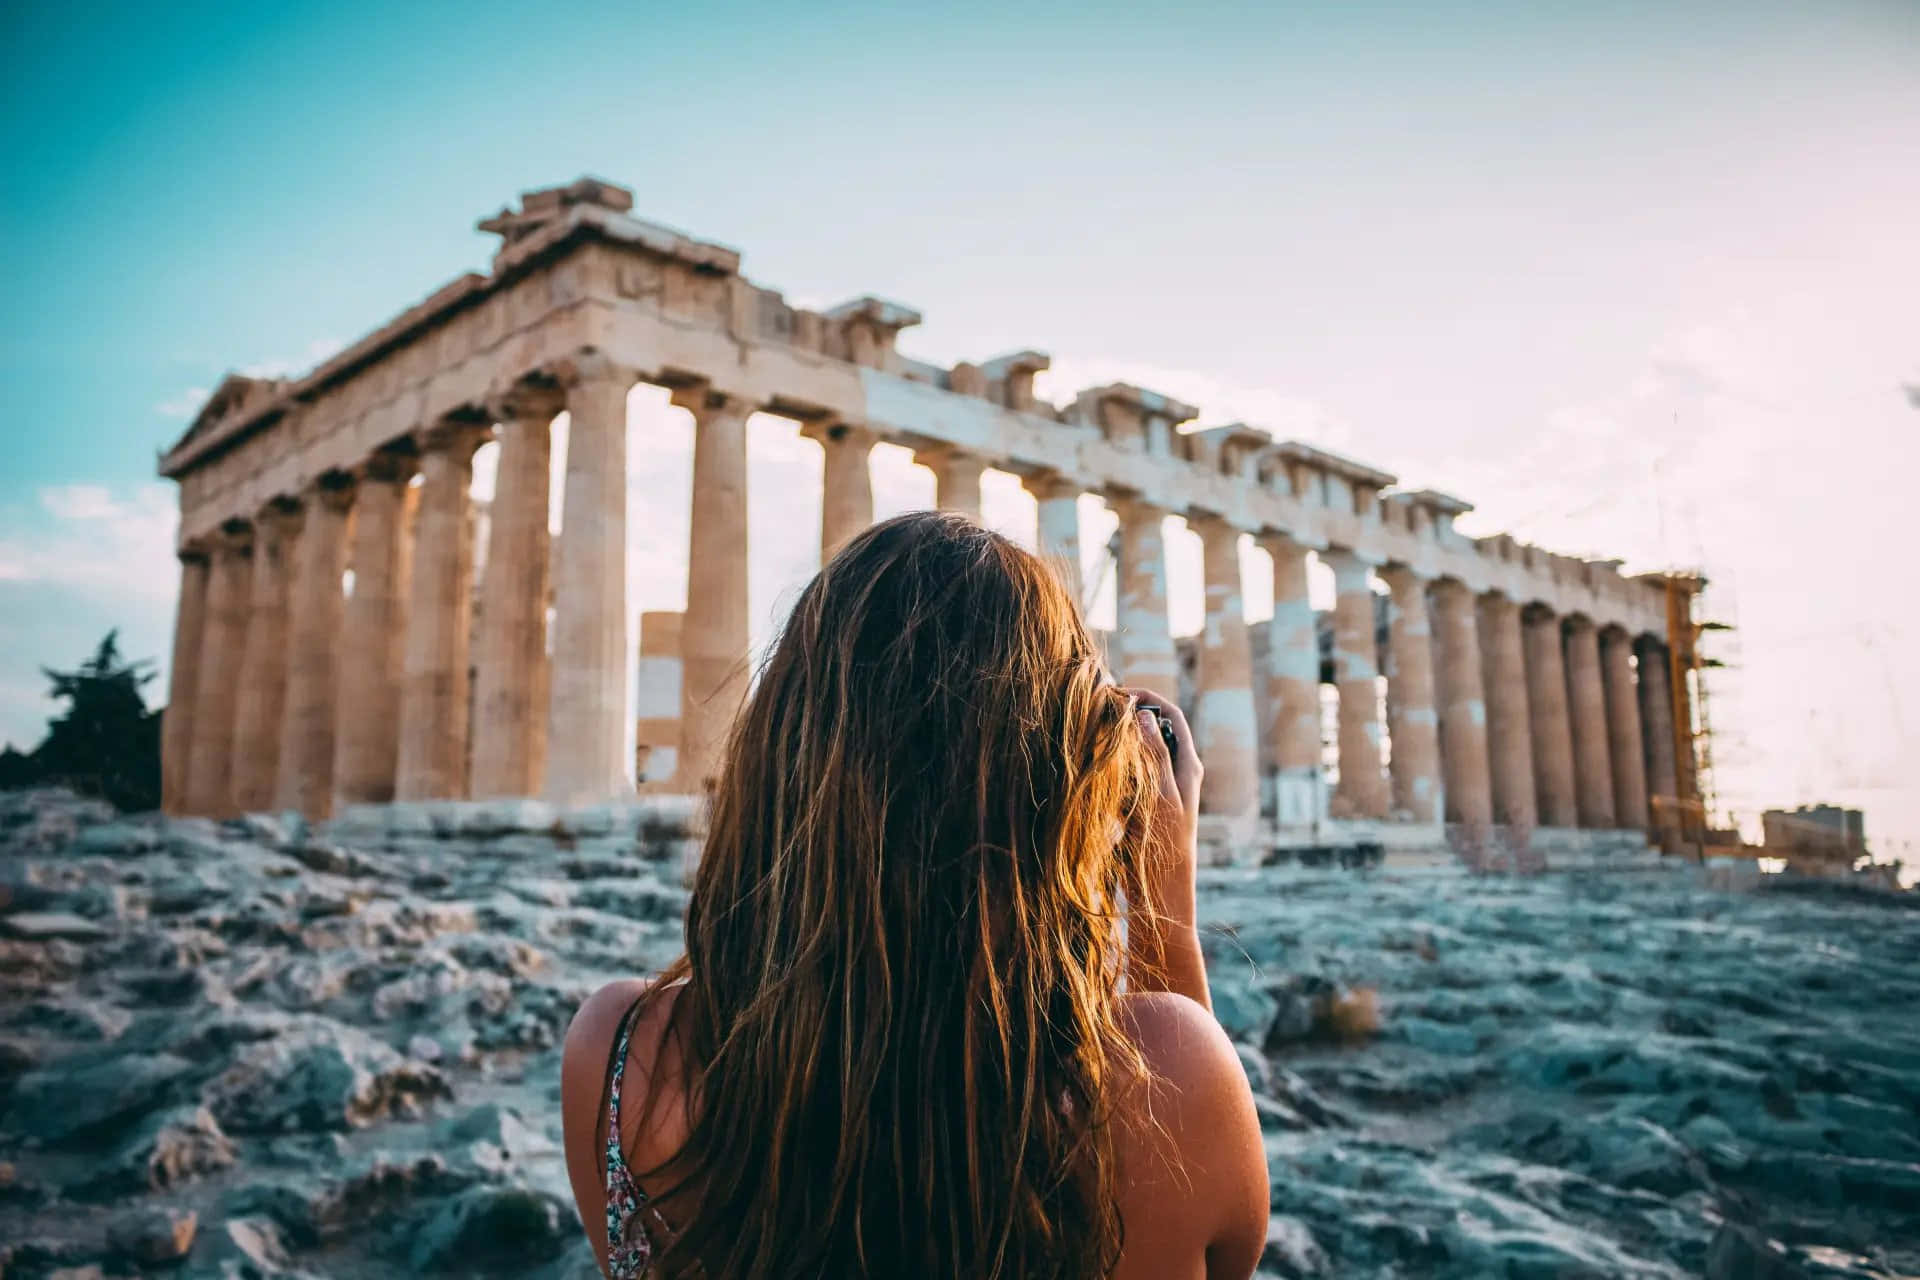 “Explore the Ancient Greek Civilization”